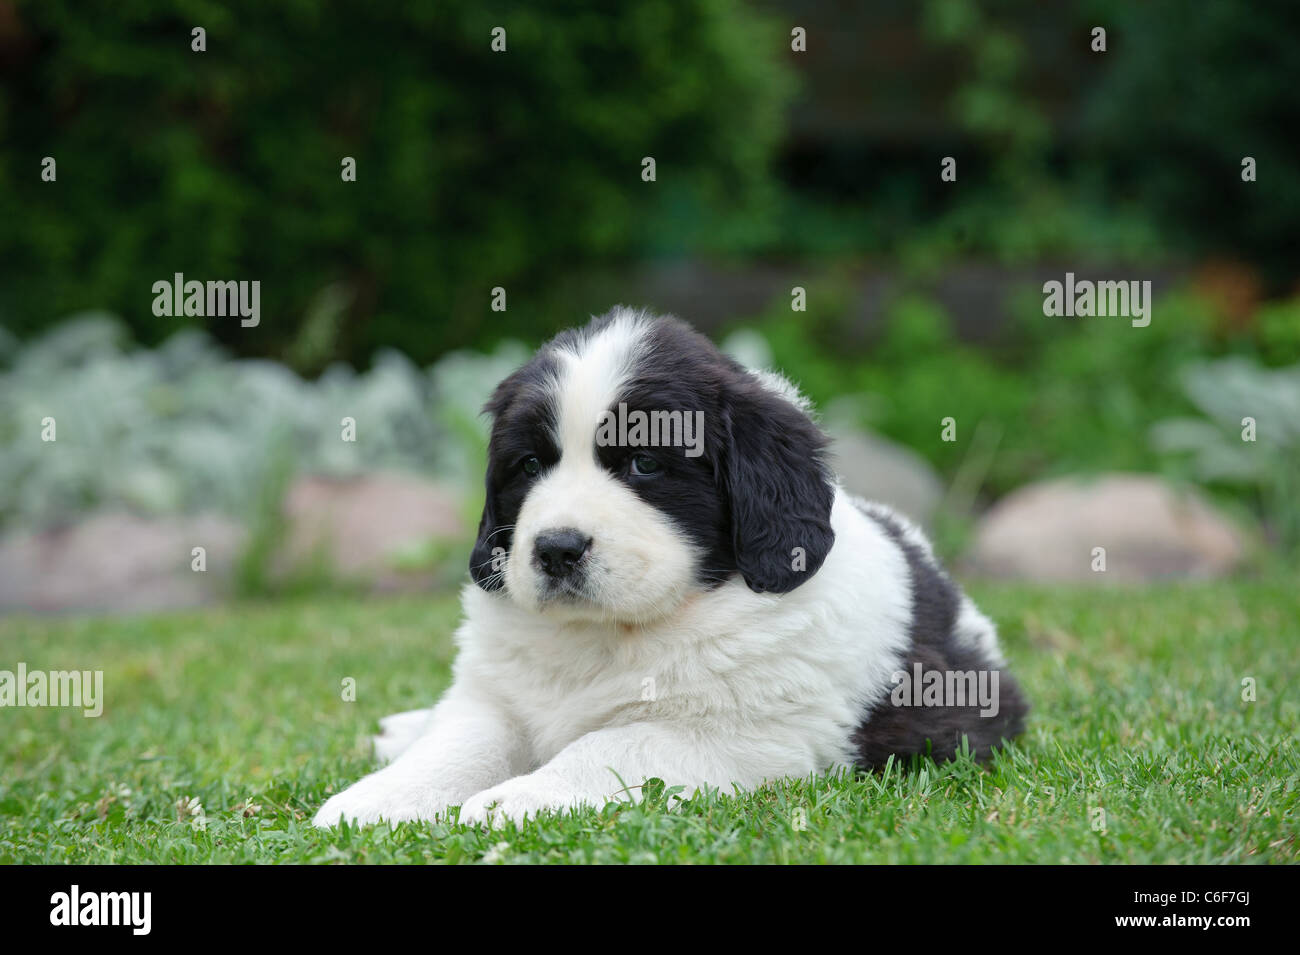 Llittle Landseer (newfoundland type) puppy portrait in garden Stock Photo